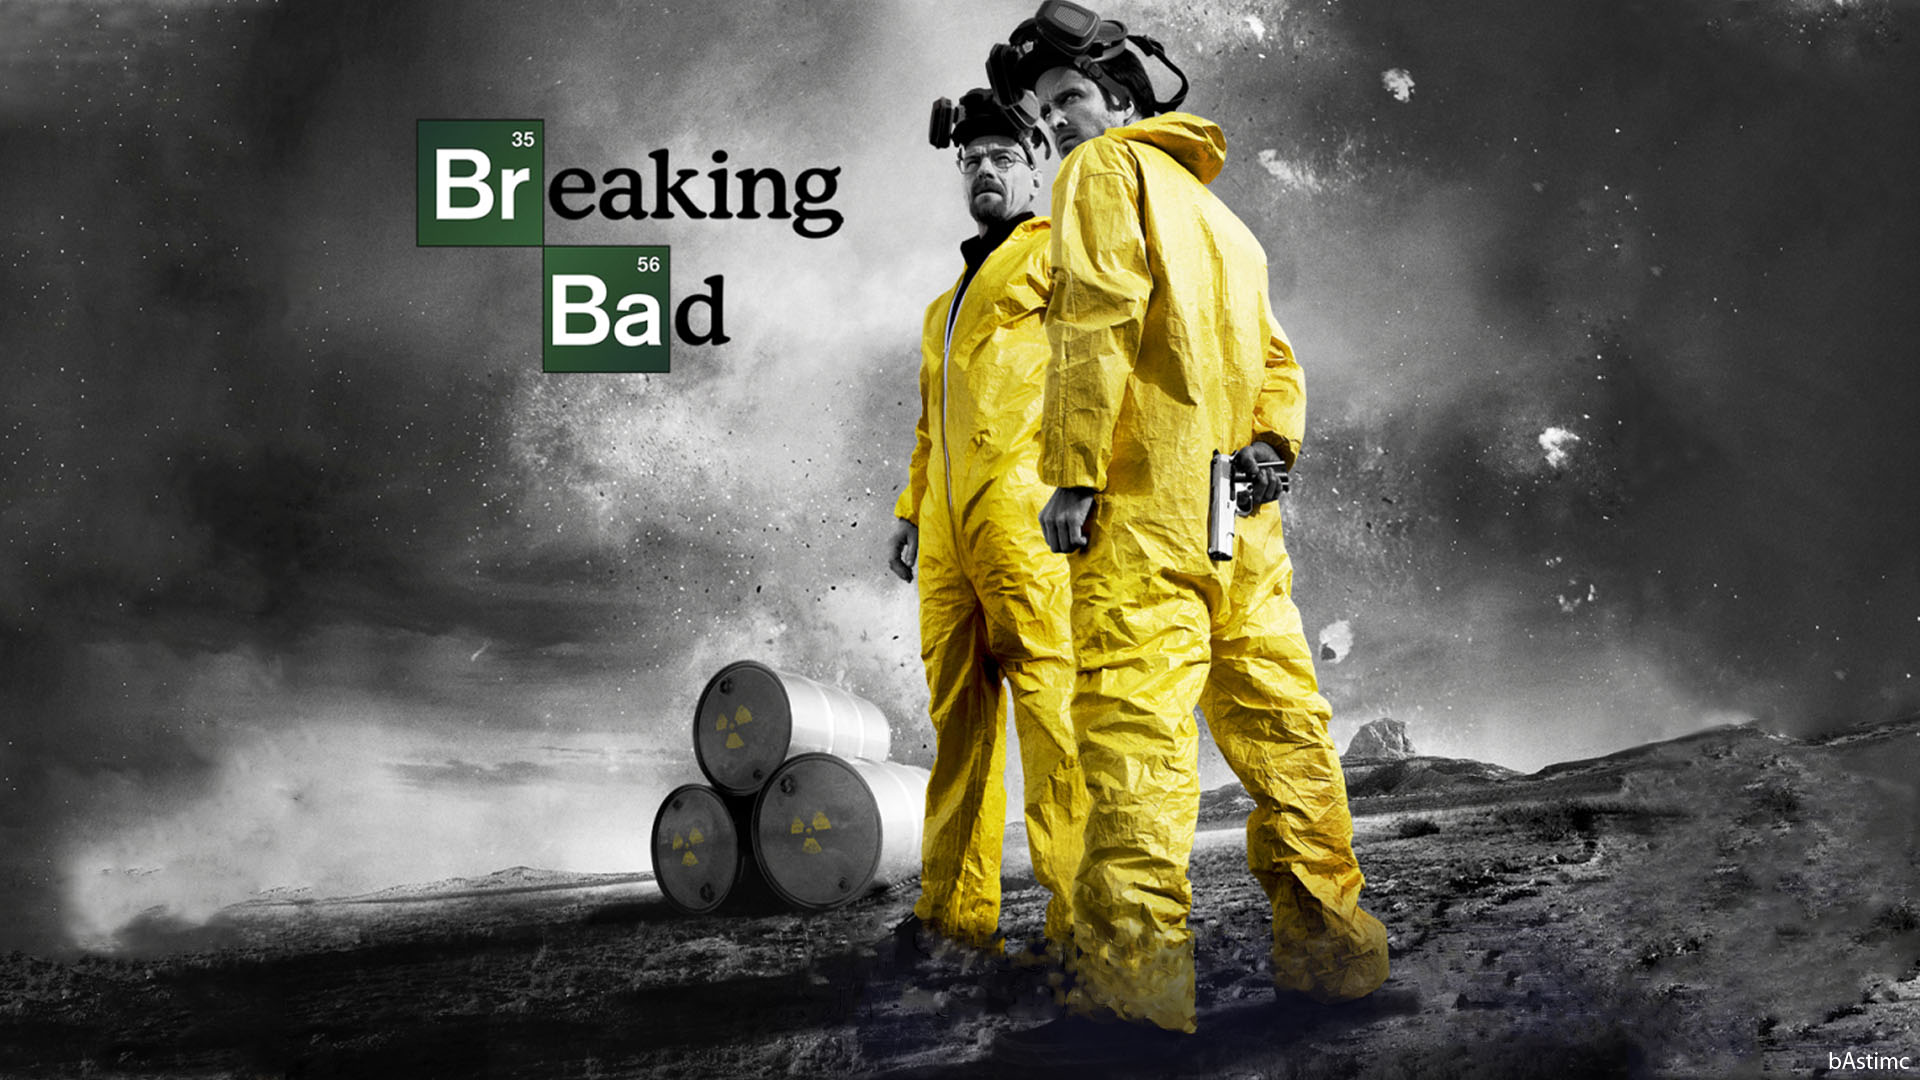 Inspiração que vem das telinhas: lições de empreendedorismo do seriado “Breaking Bad”.